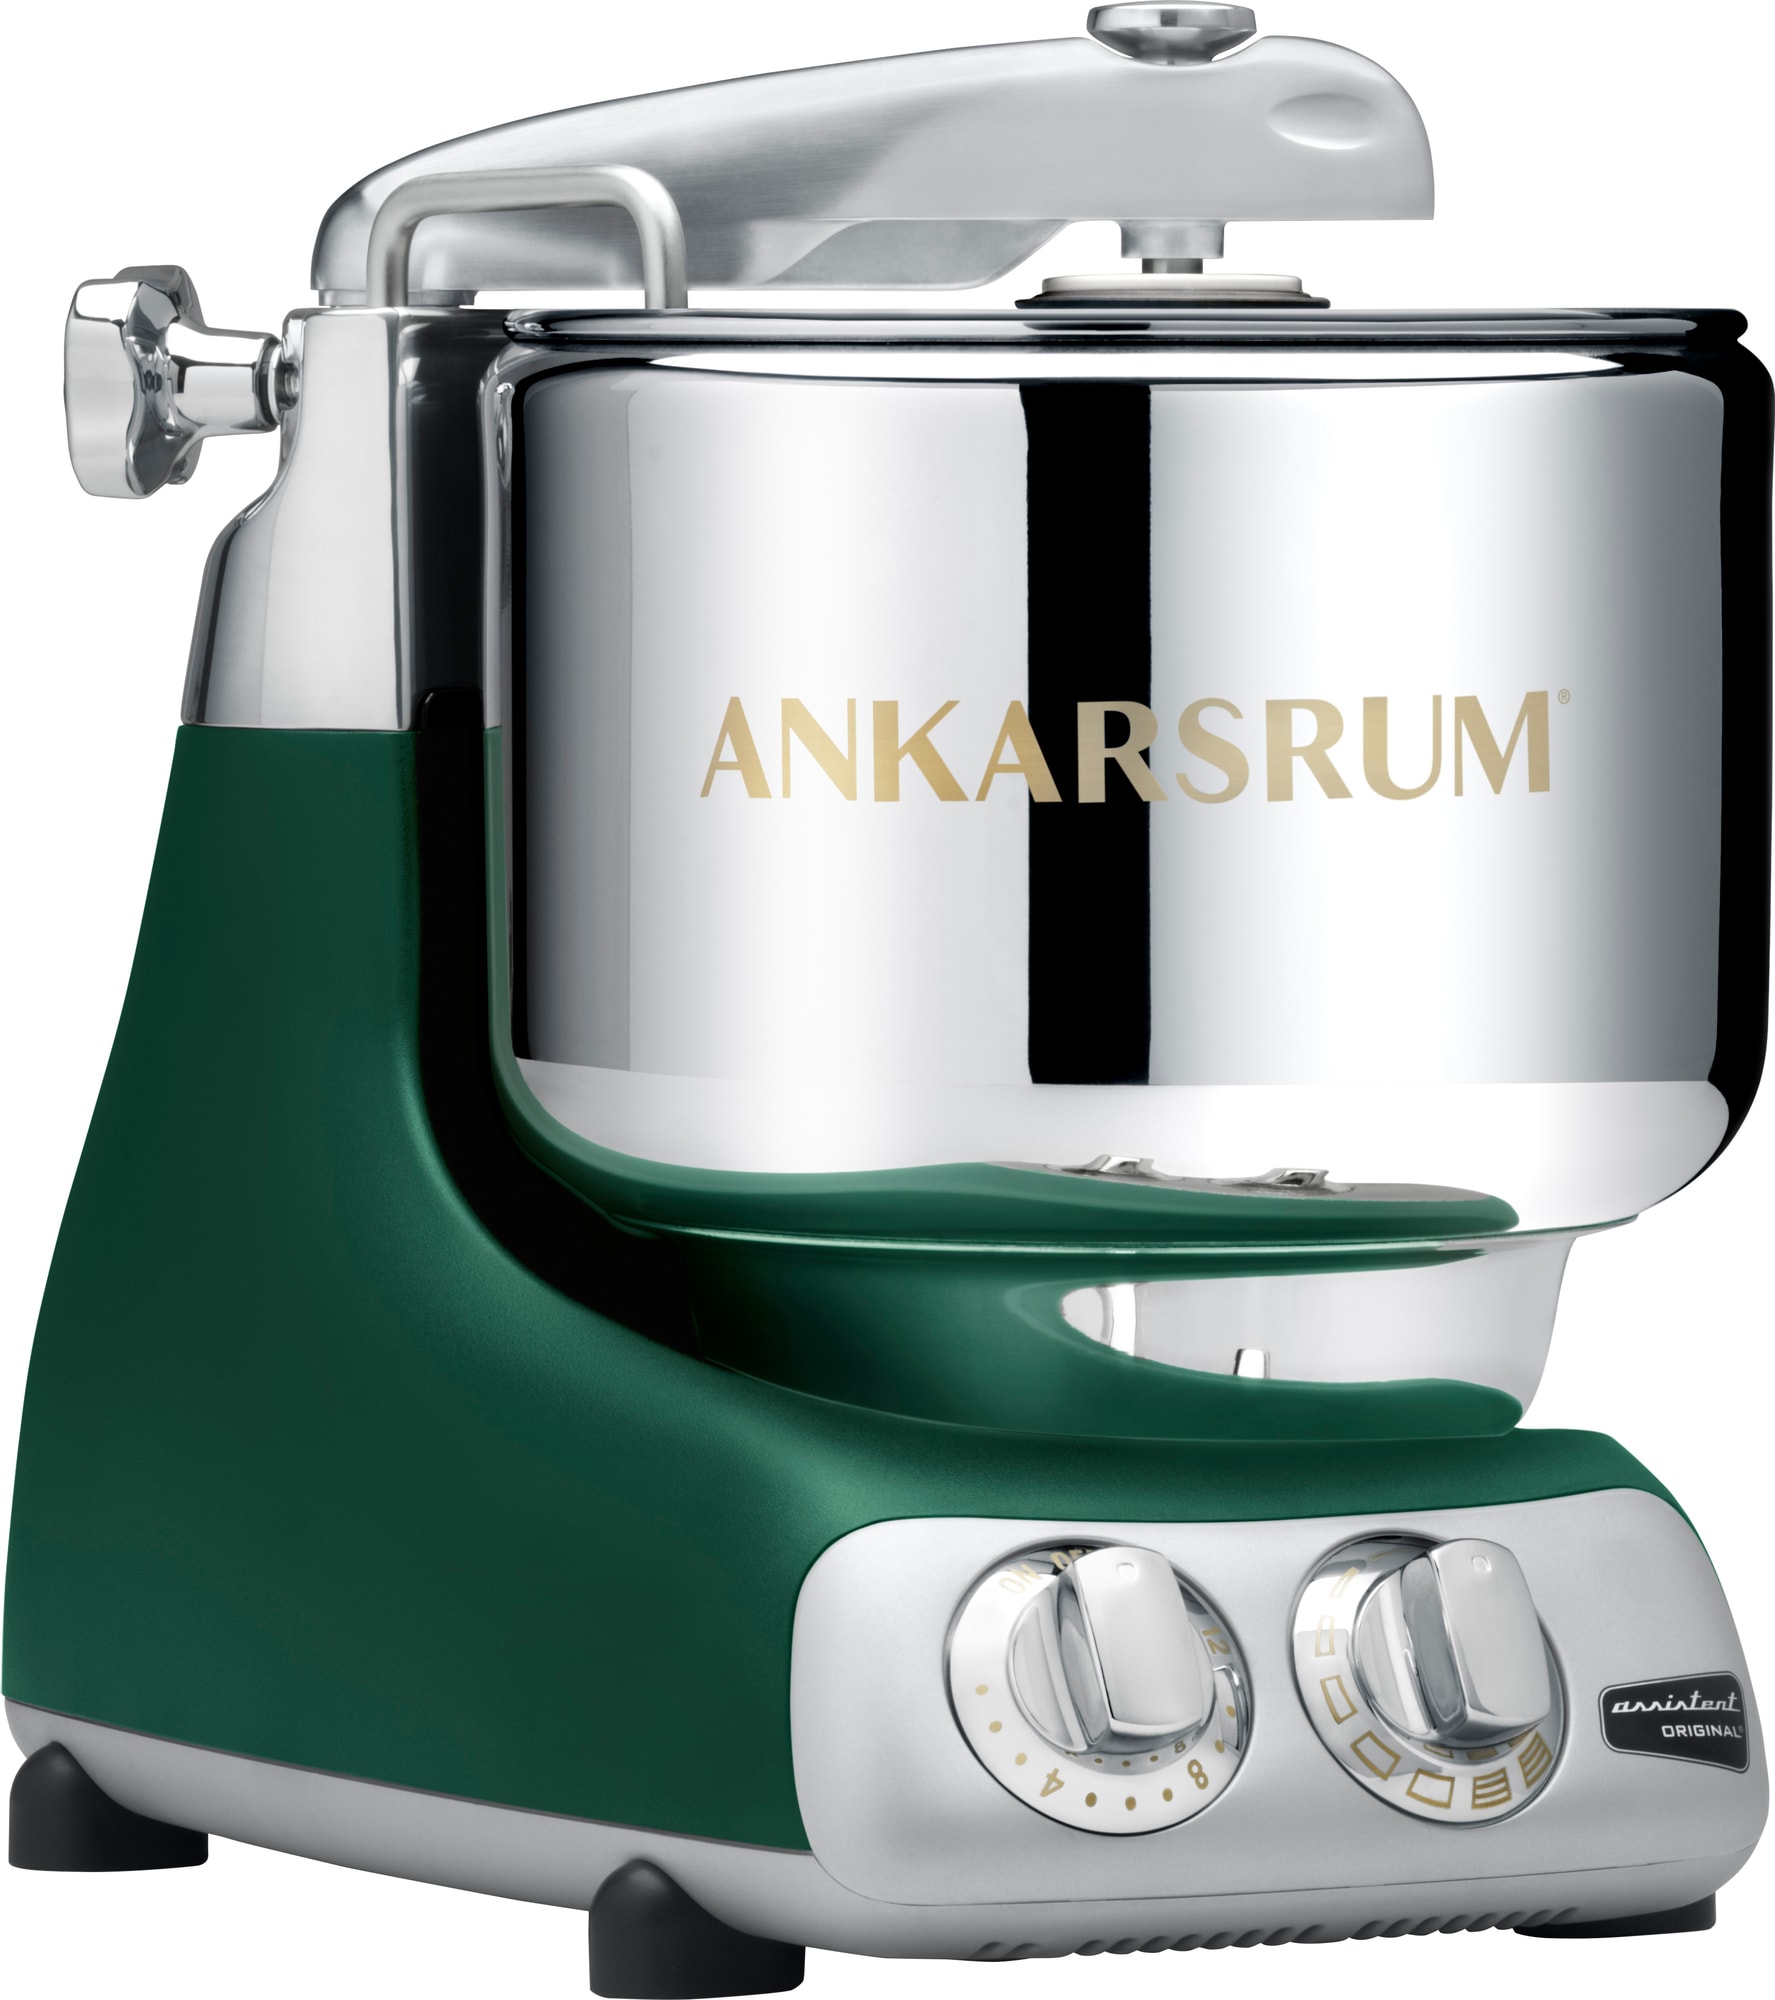 Ankarsrum Forest Green køkkenmaskine AKM6230FG (grøn)